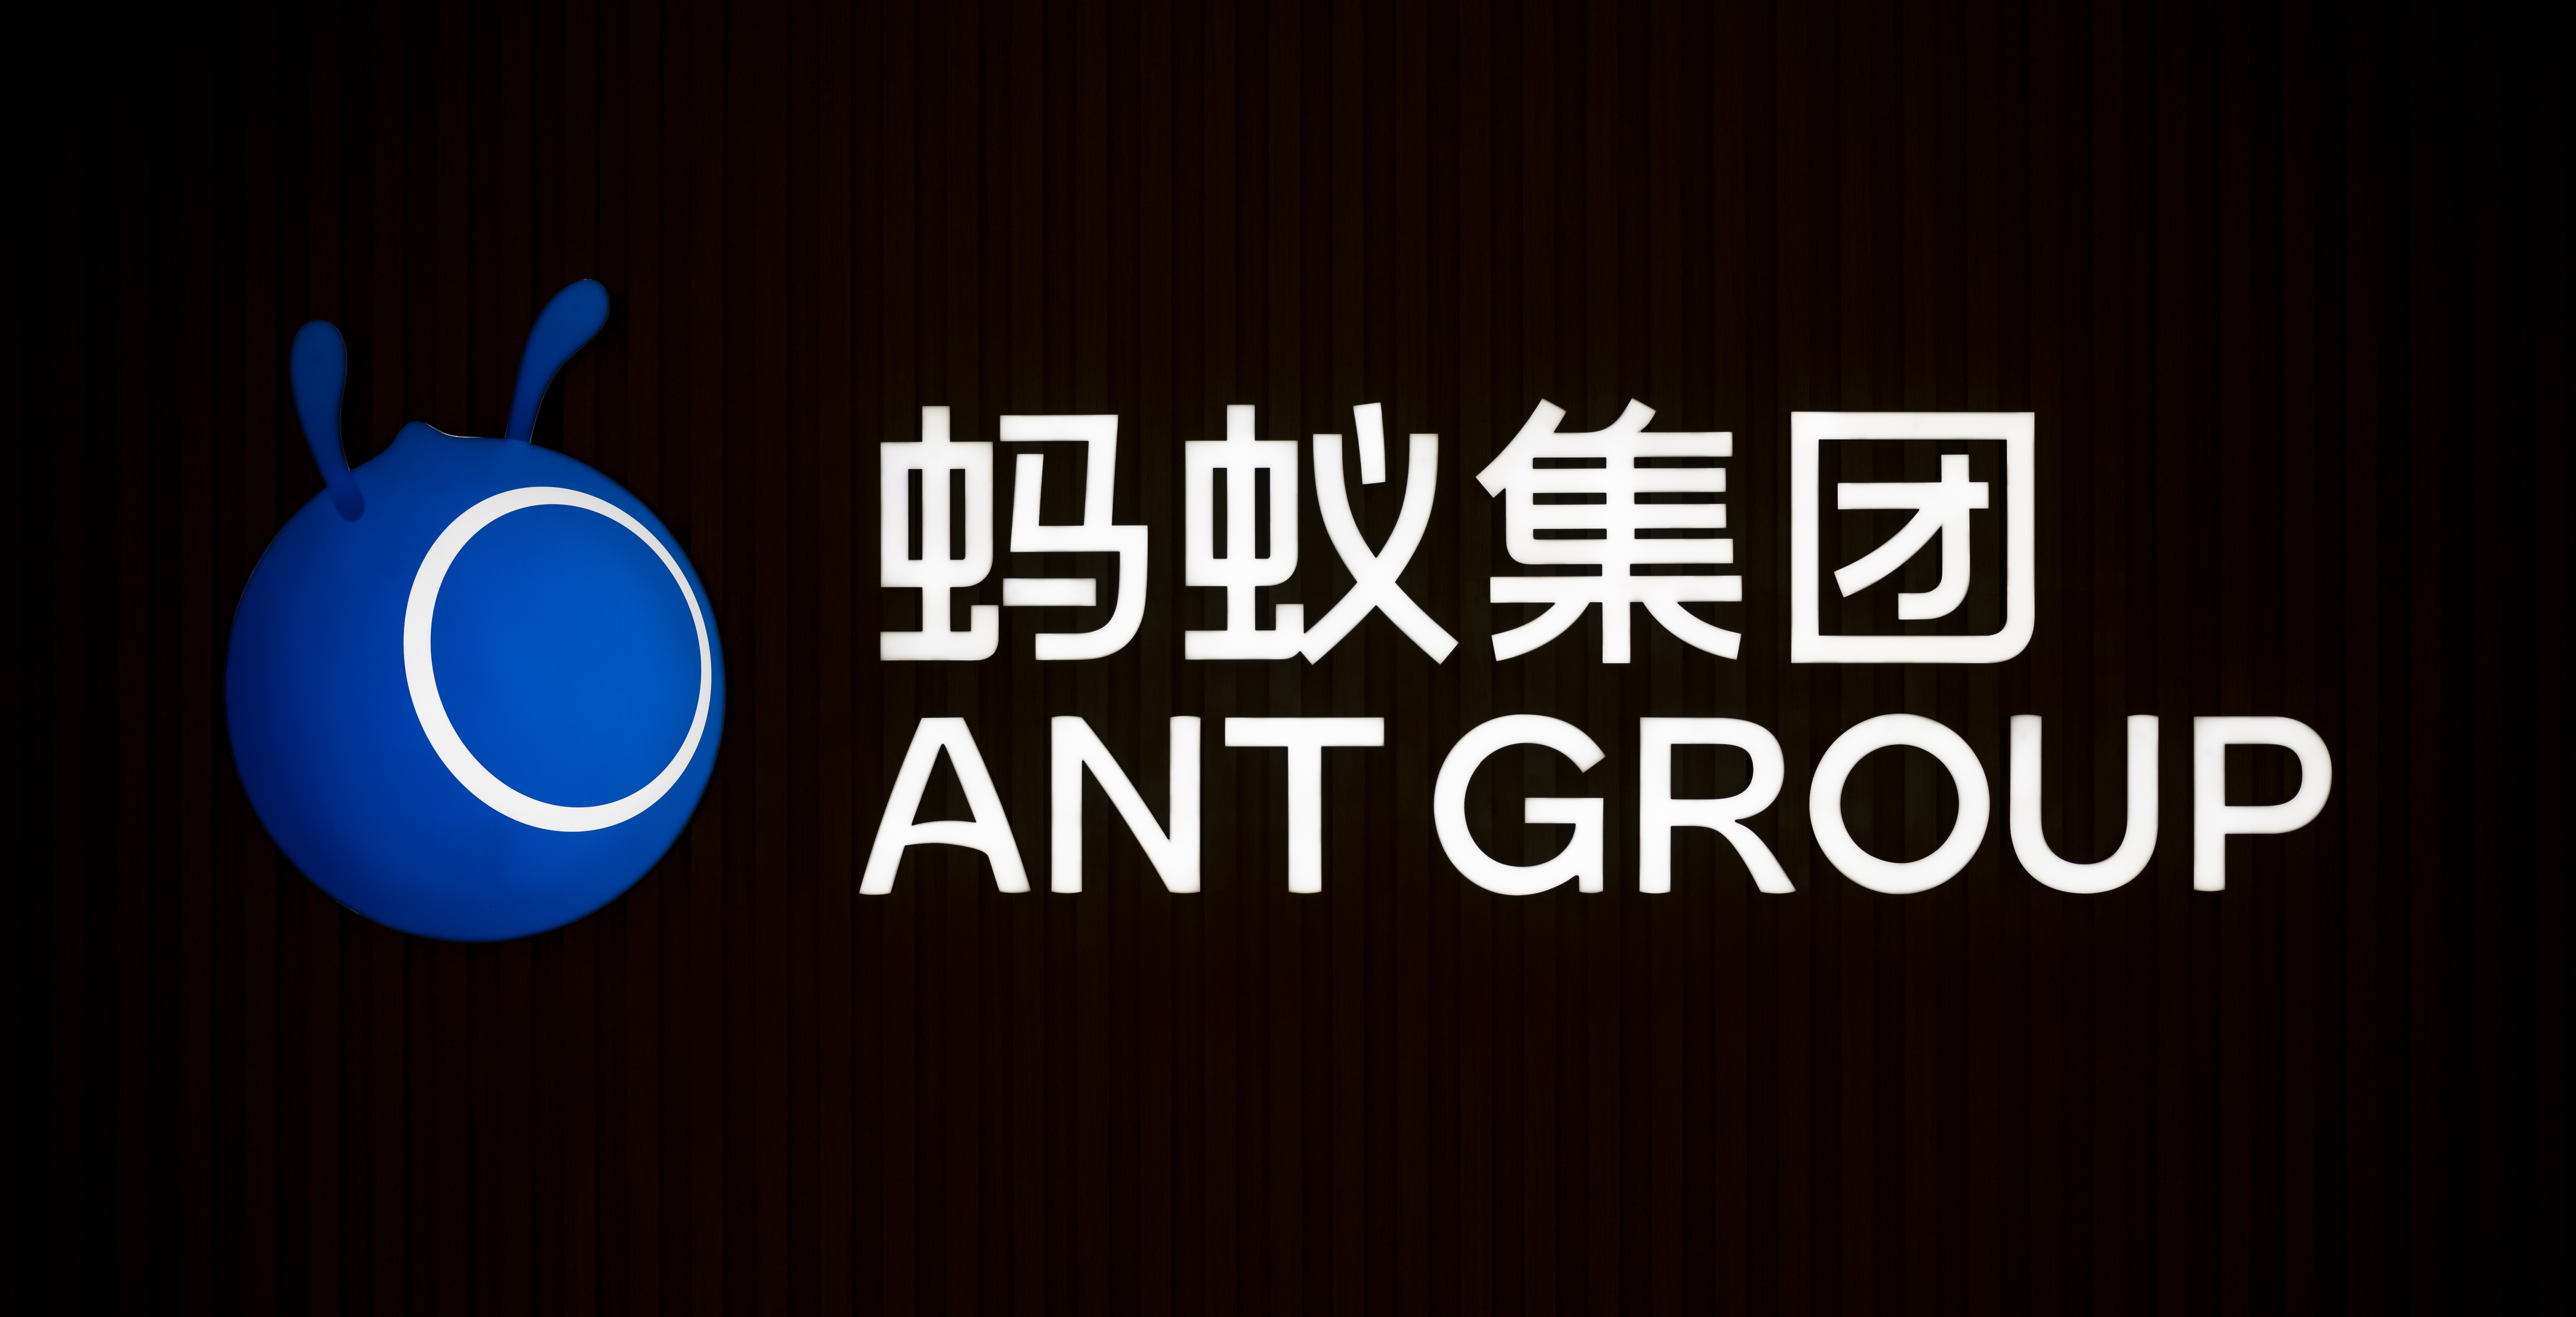 中国、アント・グループに対する調査終了－約1400億円の罰金を発表